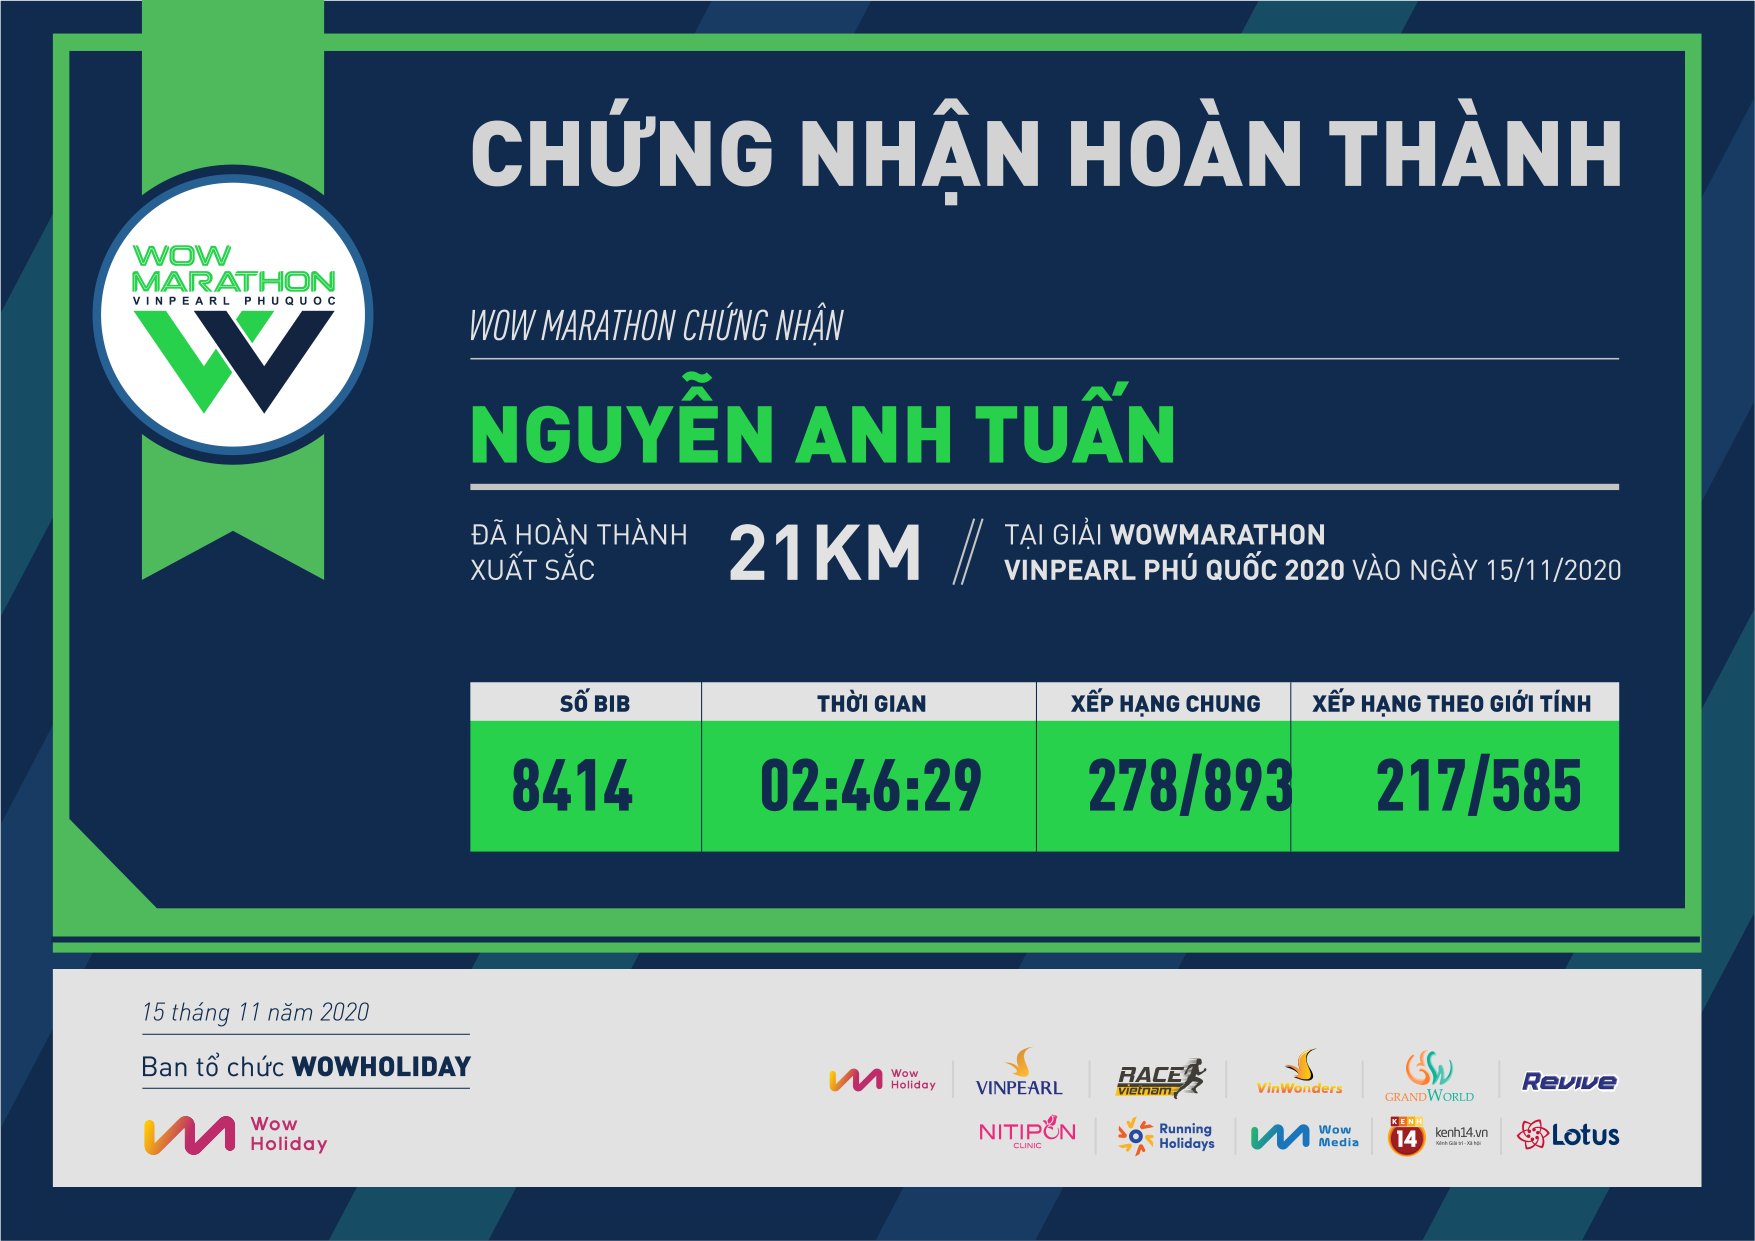 8414 - Nguyễn Anh Tuấn